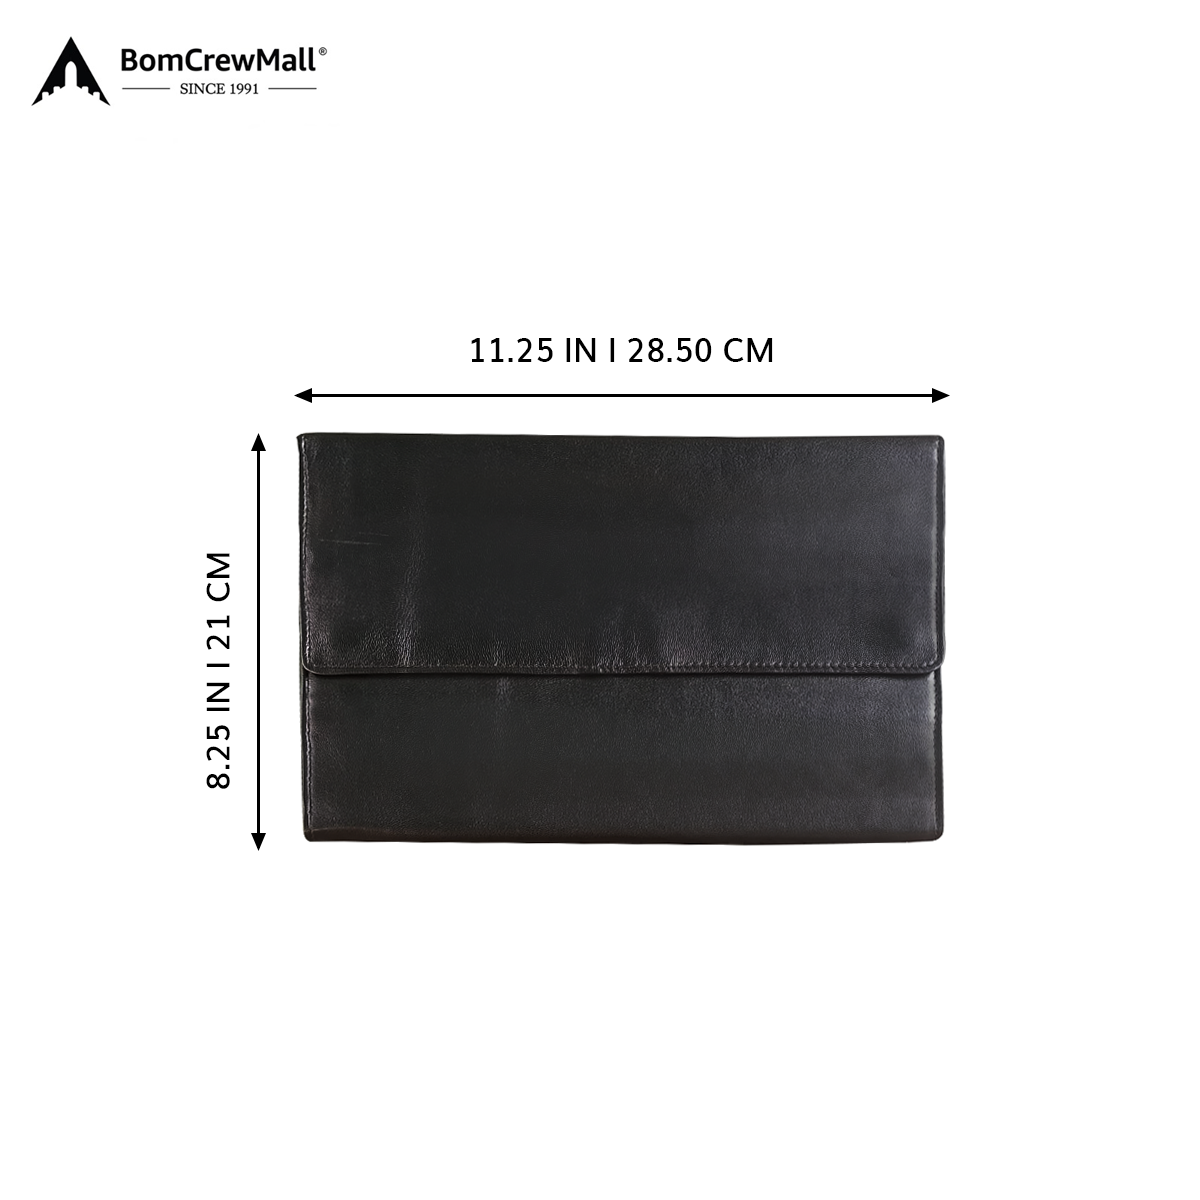 Image displays dimensions of black wallet